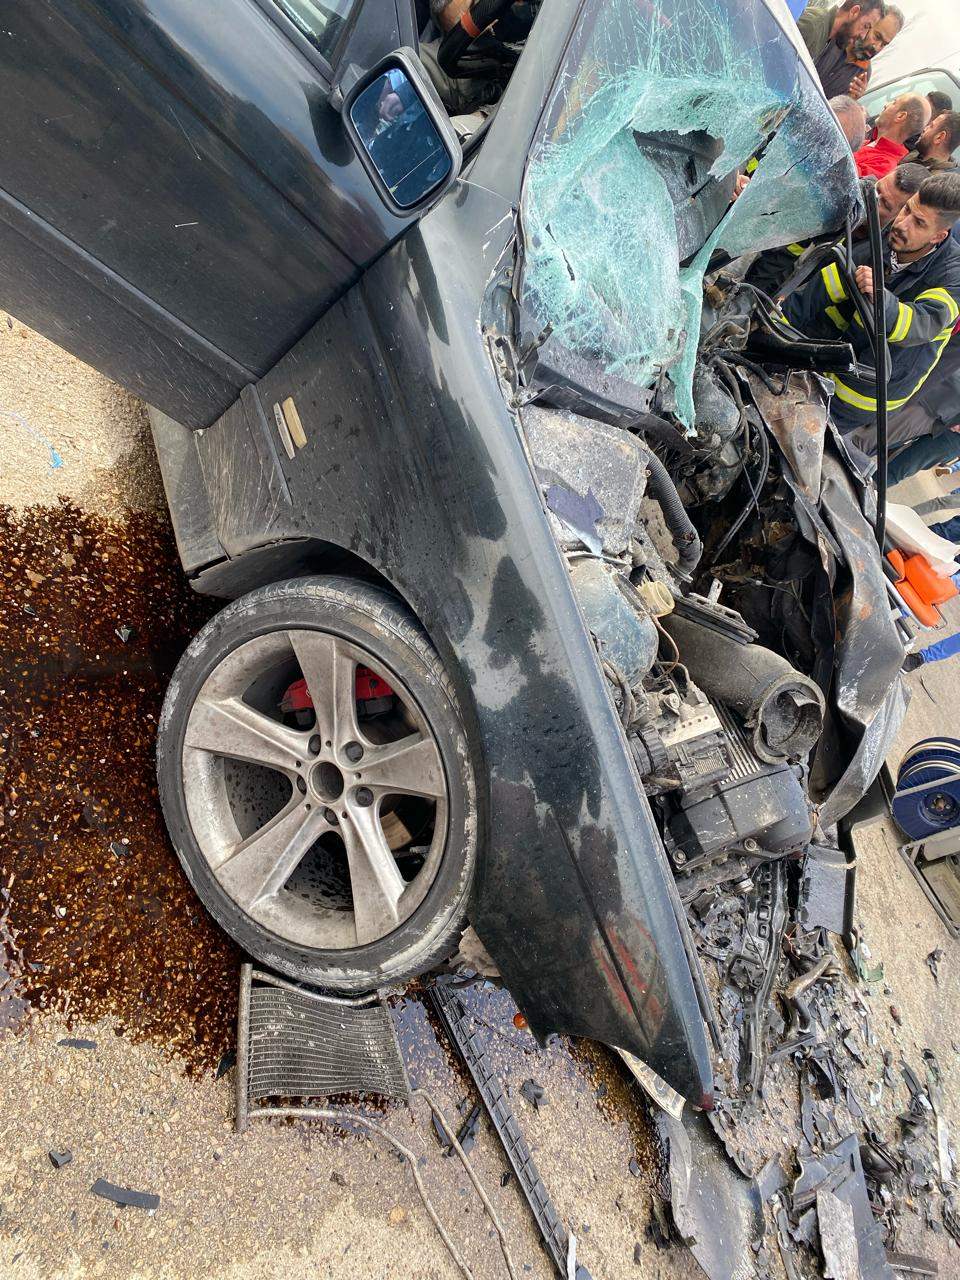 بالصور - قتيل وجريح بحادث سير مروع على طريق عام قب الياس!